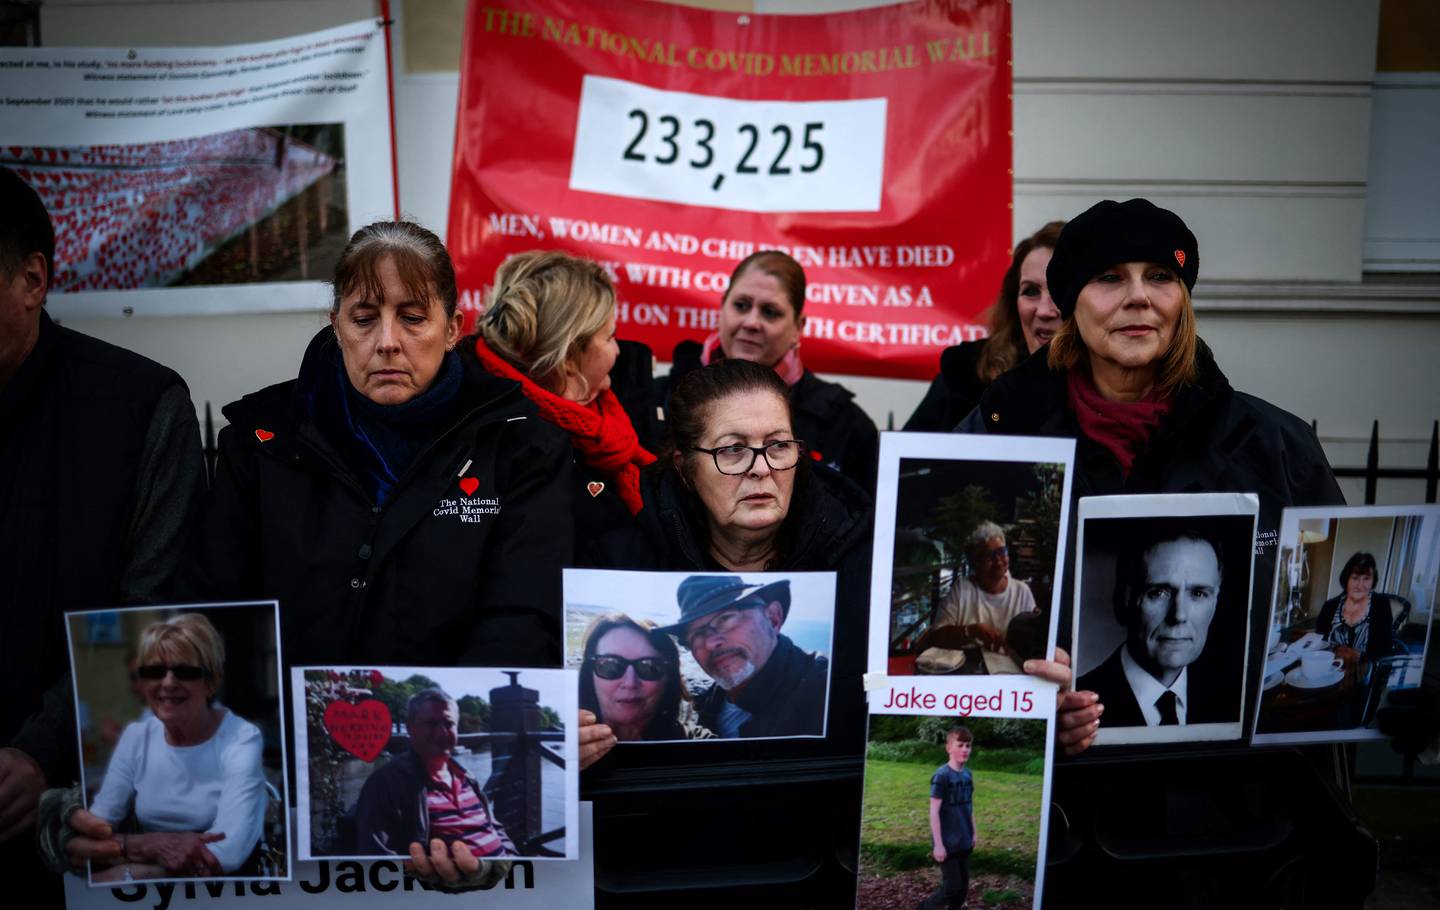 Manifestantes con pancartas y fotografías de víctimas de Covid-19 se reúnen frente a la entrada del edificio de investigación Covid-19 del Reino Unido en el oeste de Londres.